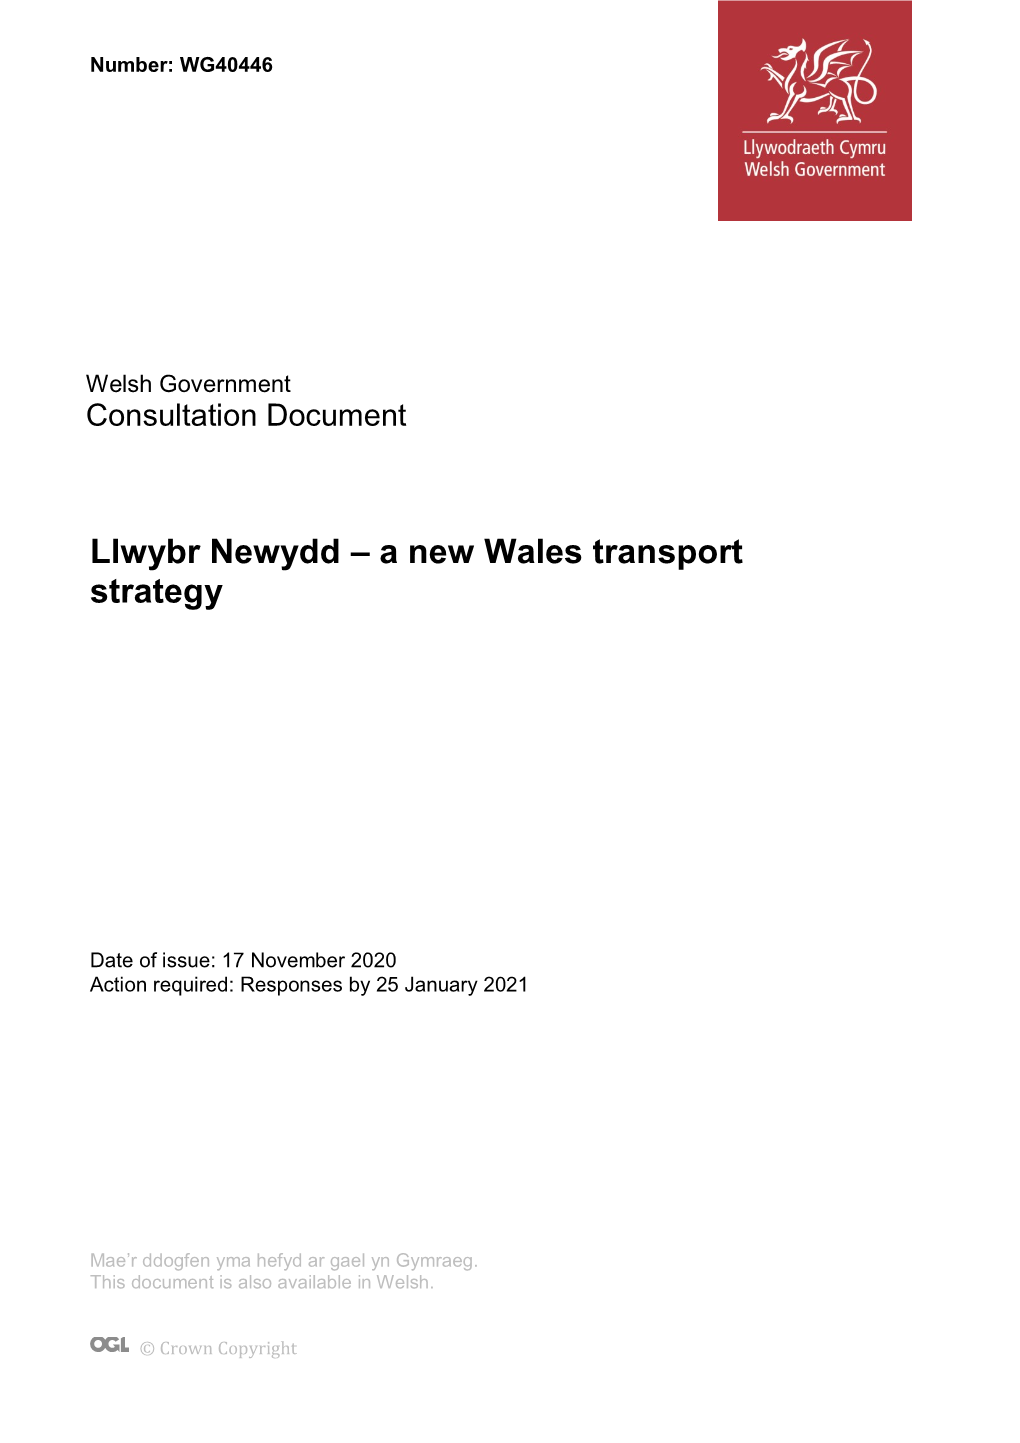 Llwybr Newydd: a New Wales Transport Strategy?